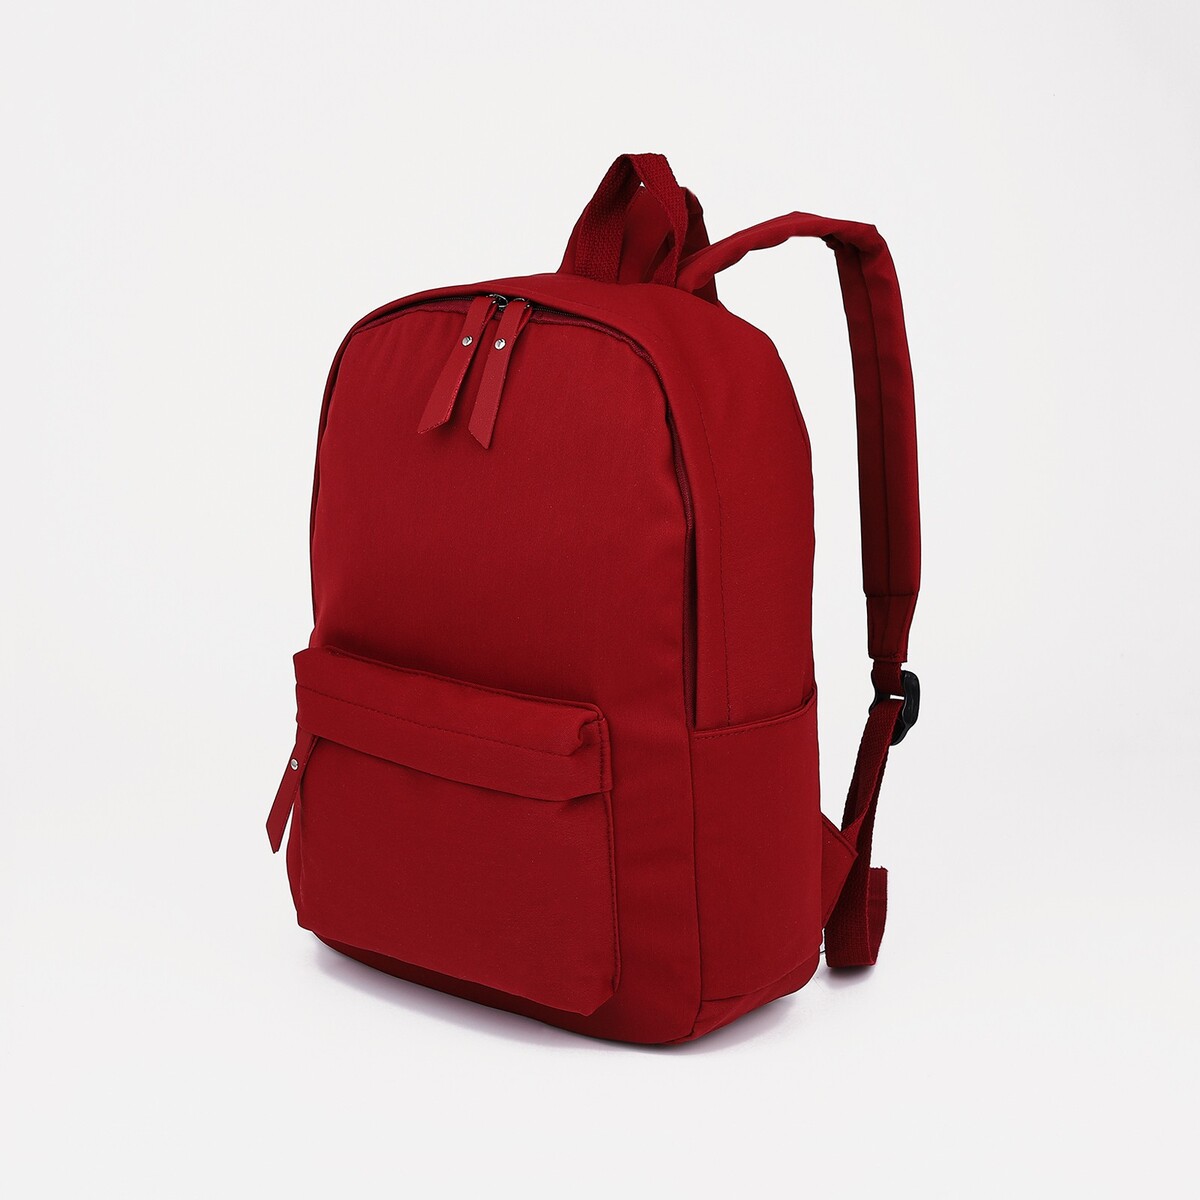 Рюкзак молодежный из текстиля, 4 кармана, цвет бордовый pixel bag рюкзак с led дисплеем pixel plus red line бордовый